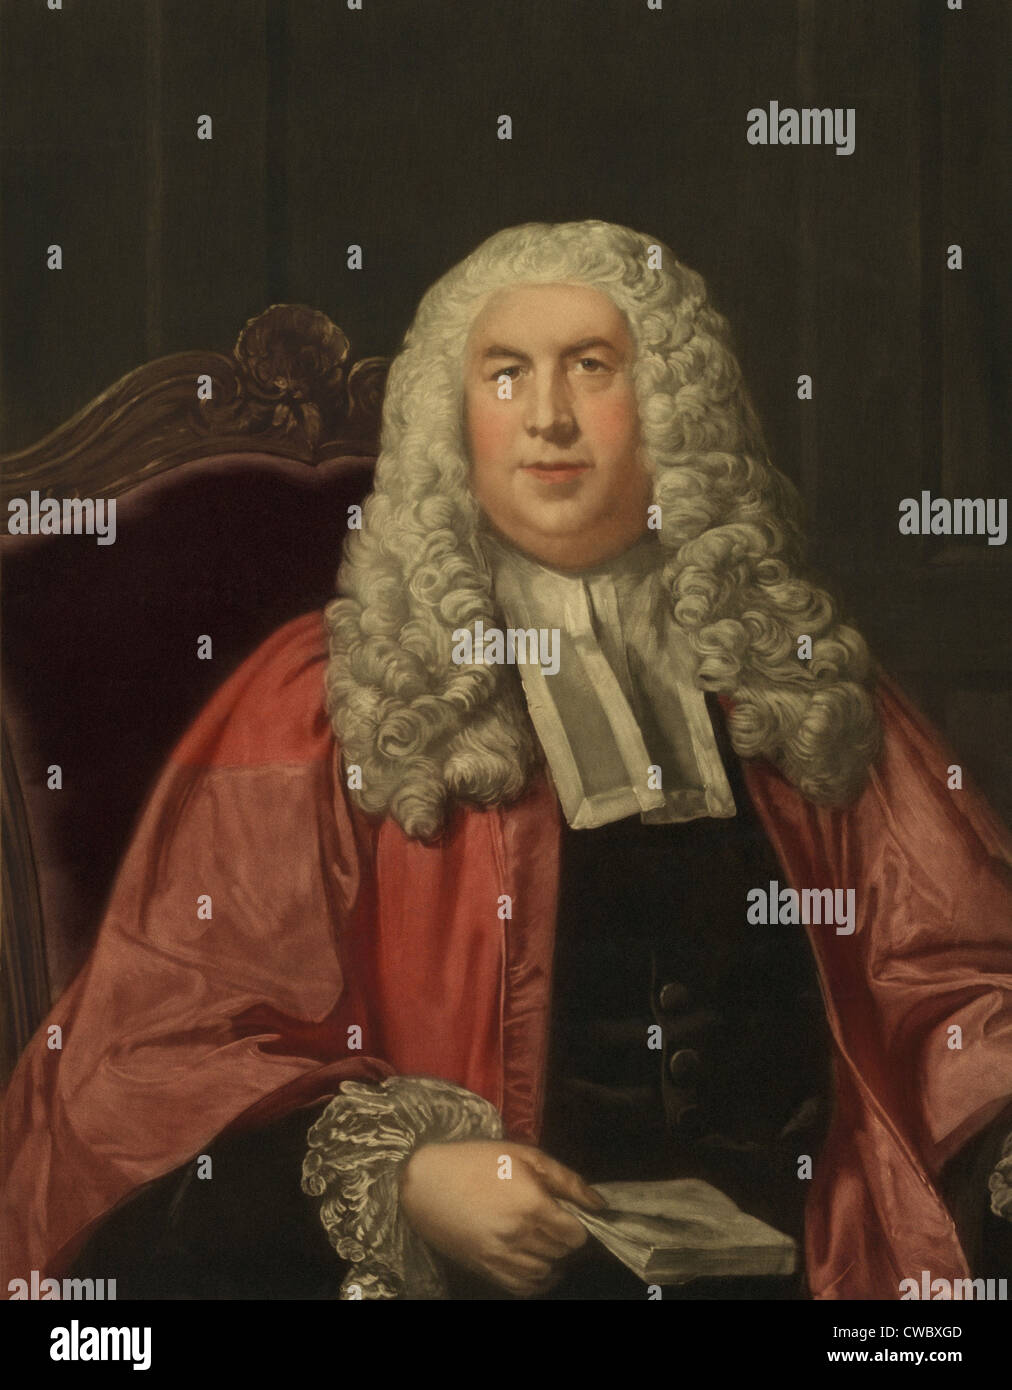 Sir William Blackstone (1723-1780), juriste français et auteur de COMMENTAIRES SUR LES LOIS DE L'Angleterre (1765-1769), un classique Banque D'Images